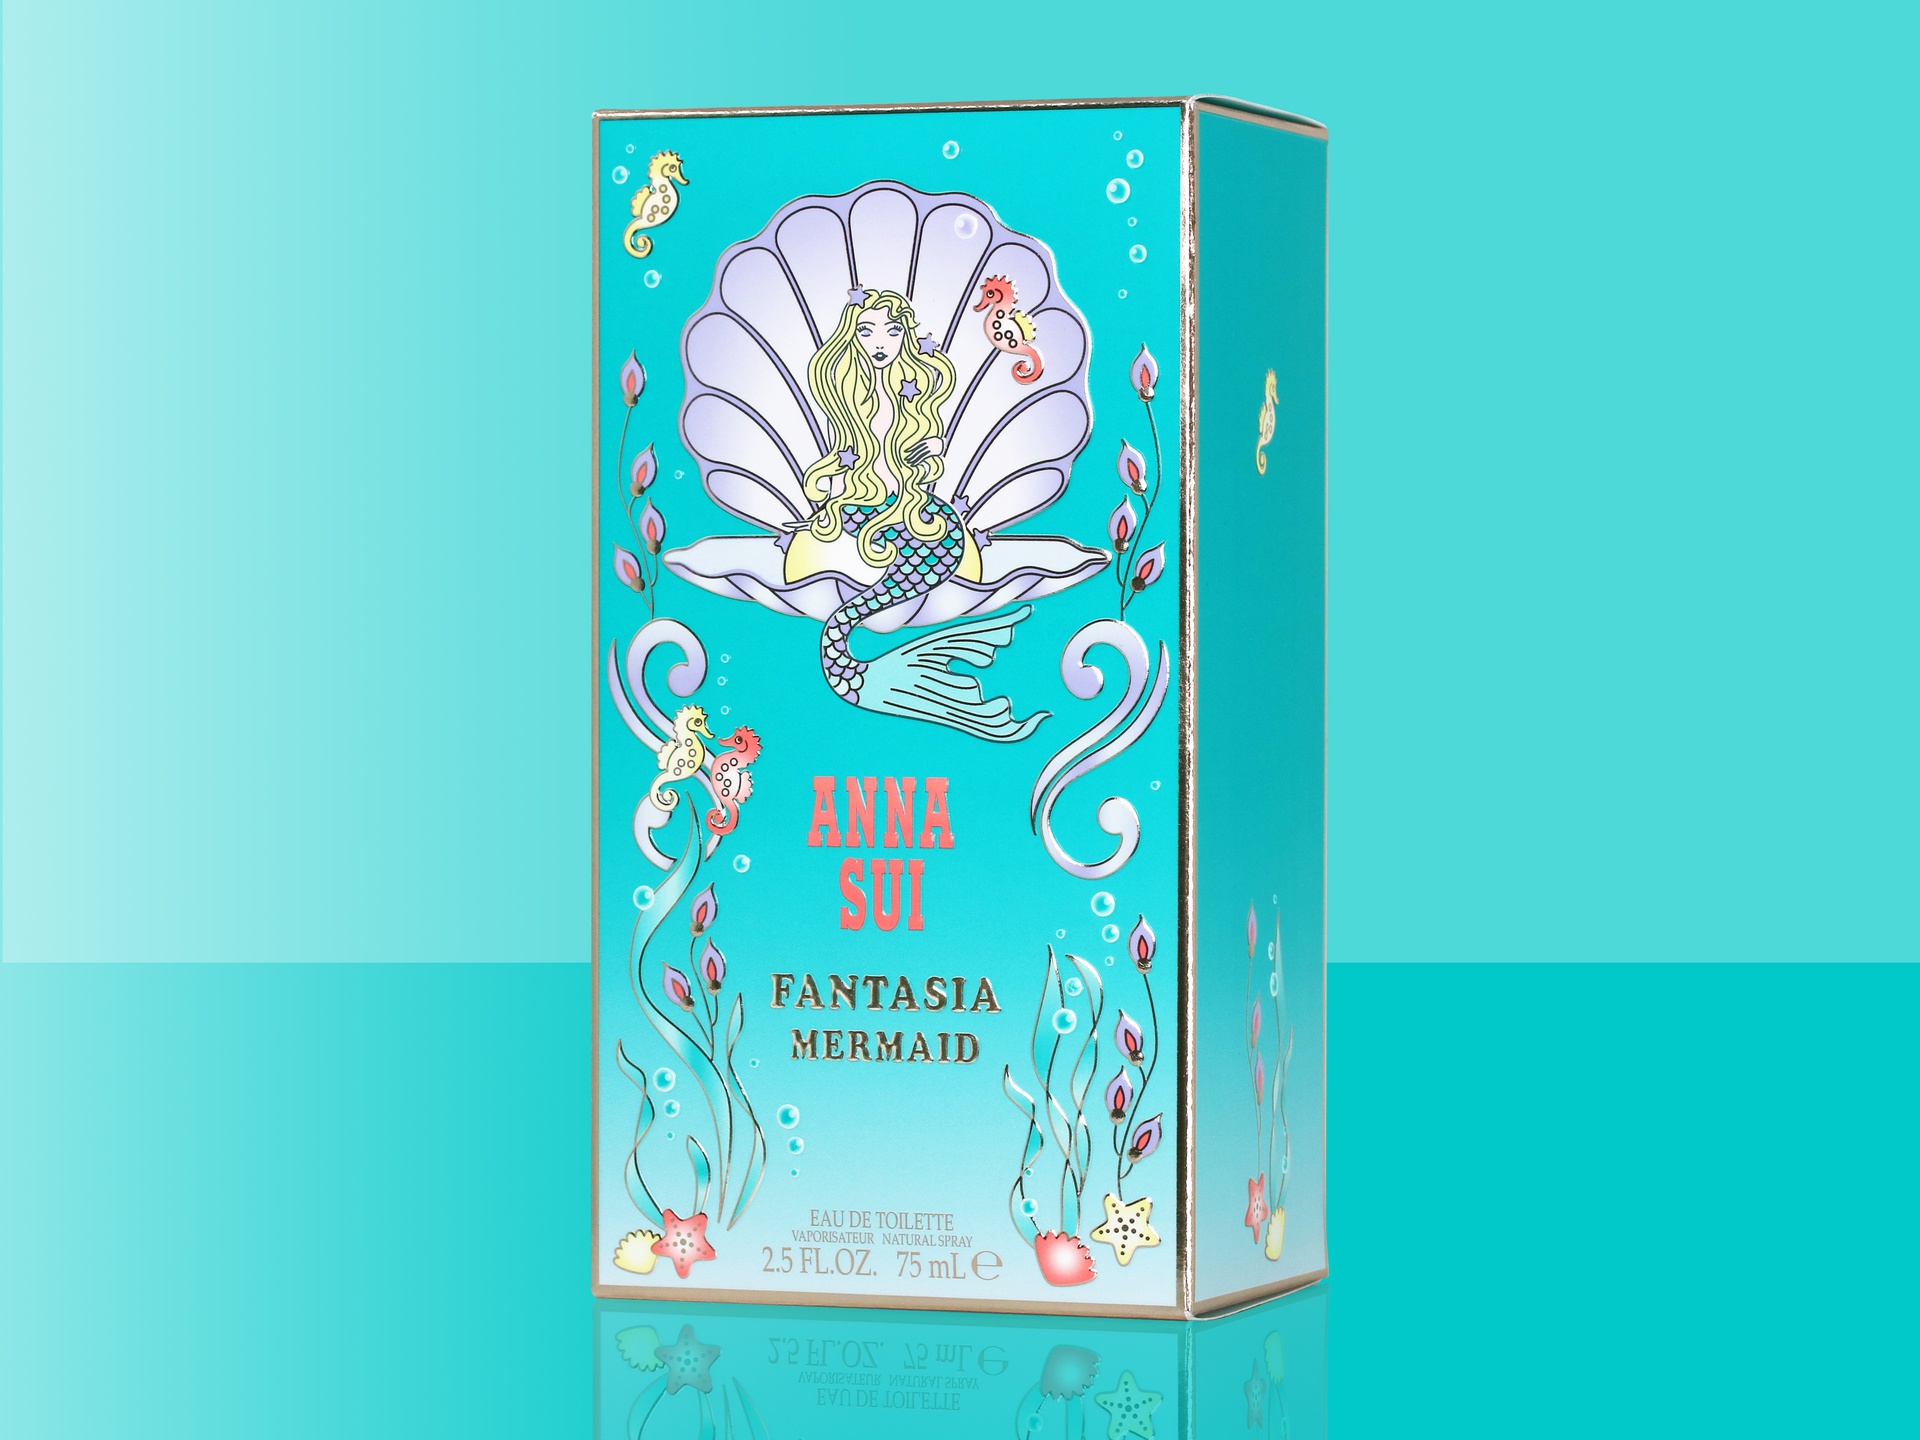 Anna Sui Fantasia Mermaid packaging